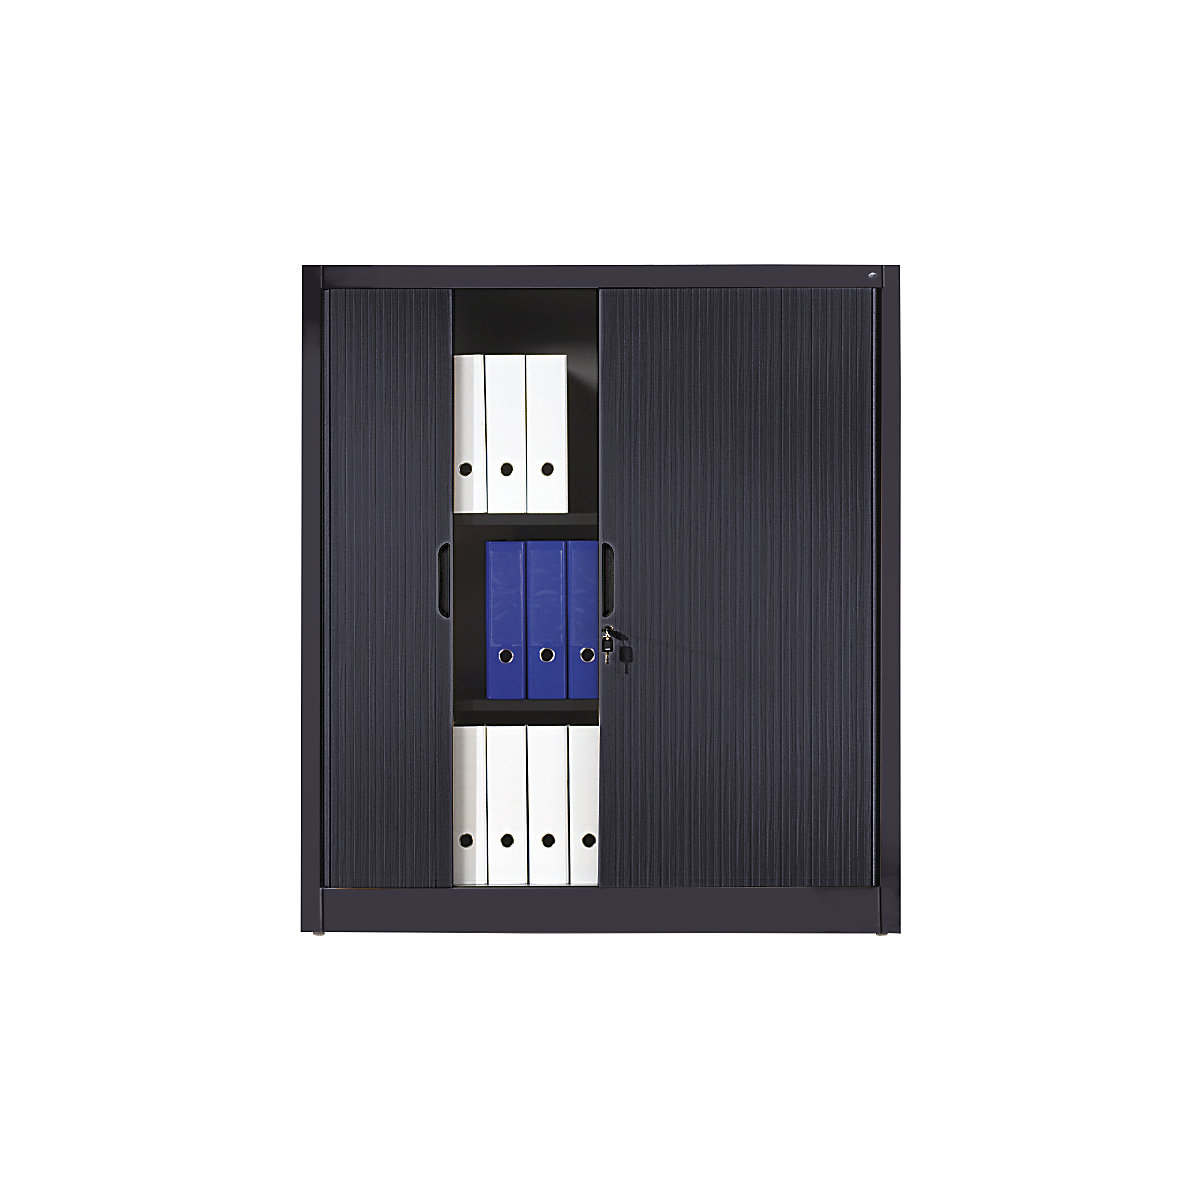 Žaluziová skříň s horizontální žaluzií – C+P, v x š x h 1345 x 1200 x 420 mm, 3 police, 3,5 výšky pořadačů, černošedá-4